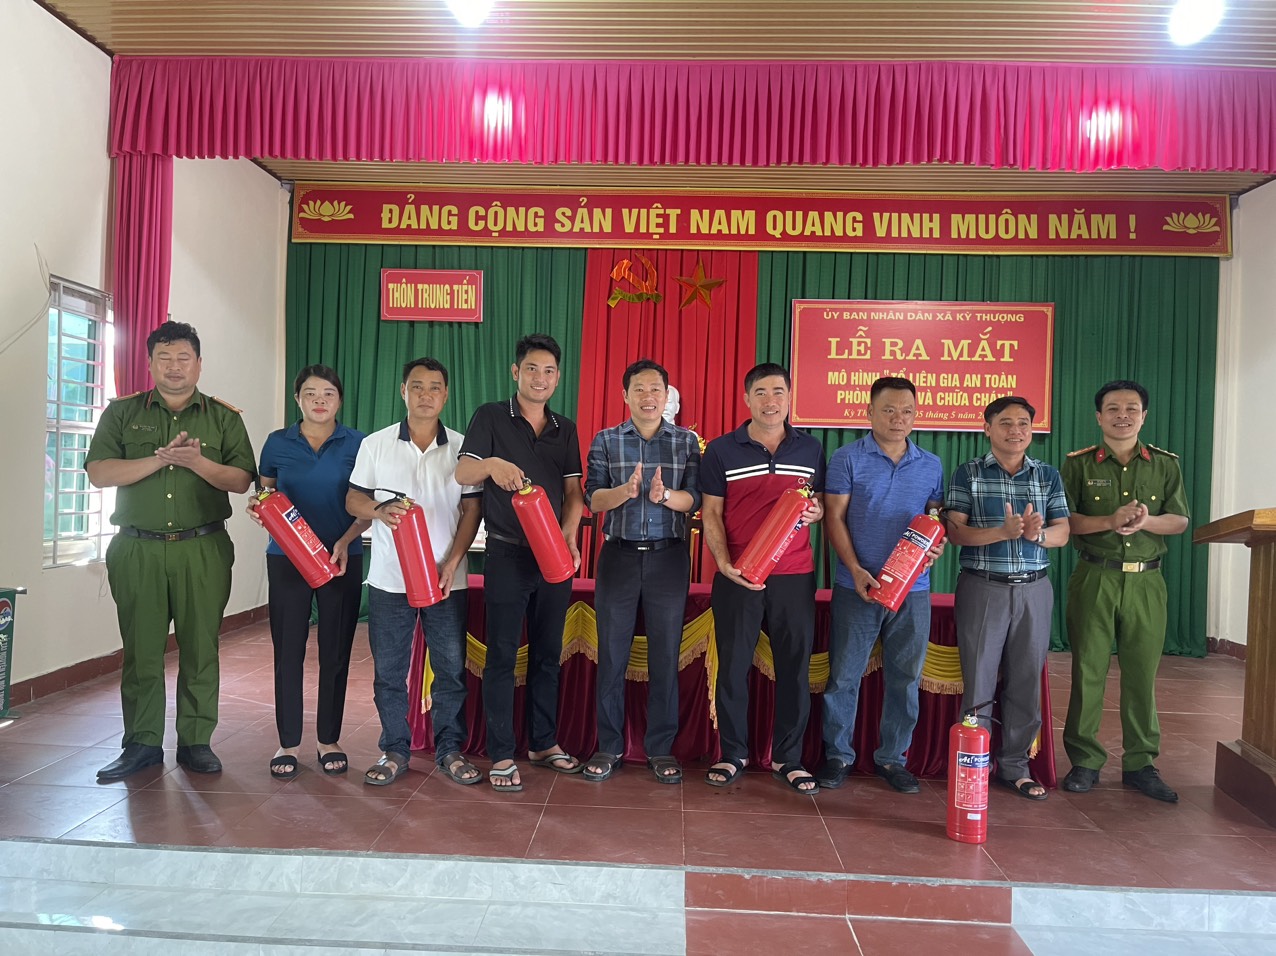 UBND Xã Kỳ Thượng tổ chức lễ ra mắt mô hình “Tổ dân cư an toàn về PCCC” tại tổ liên gia số 2 thôn Trung Tiến, xã Kỳ Thượng